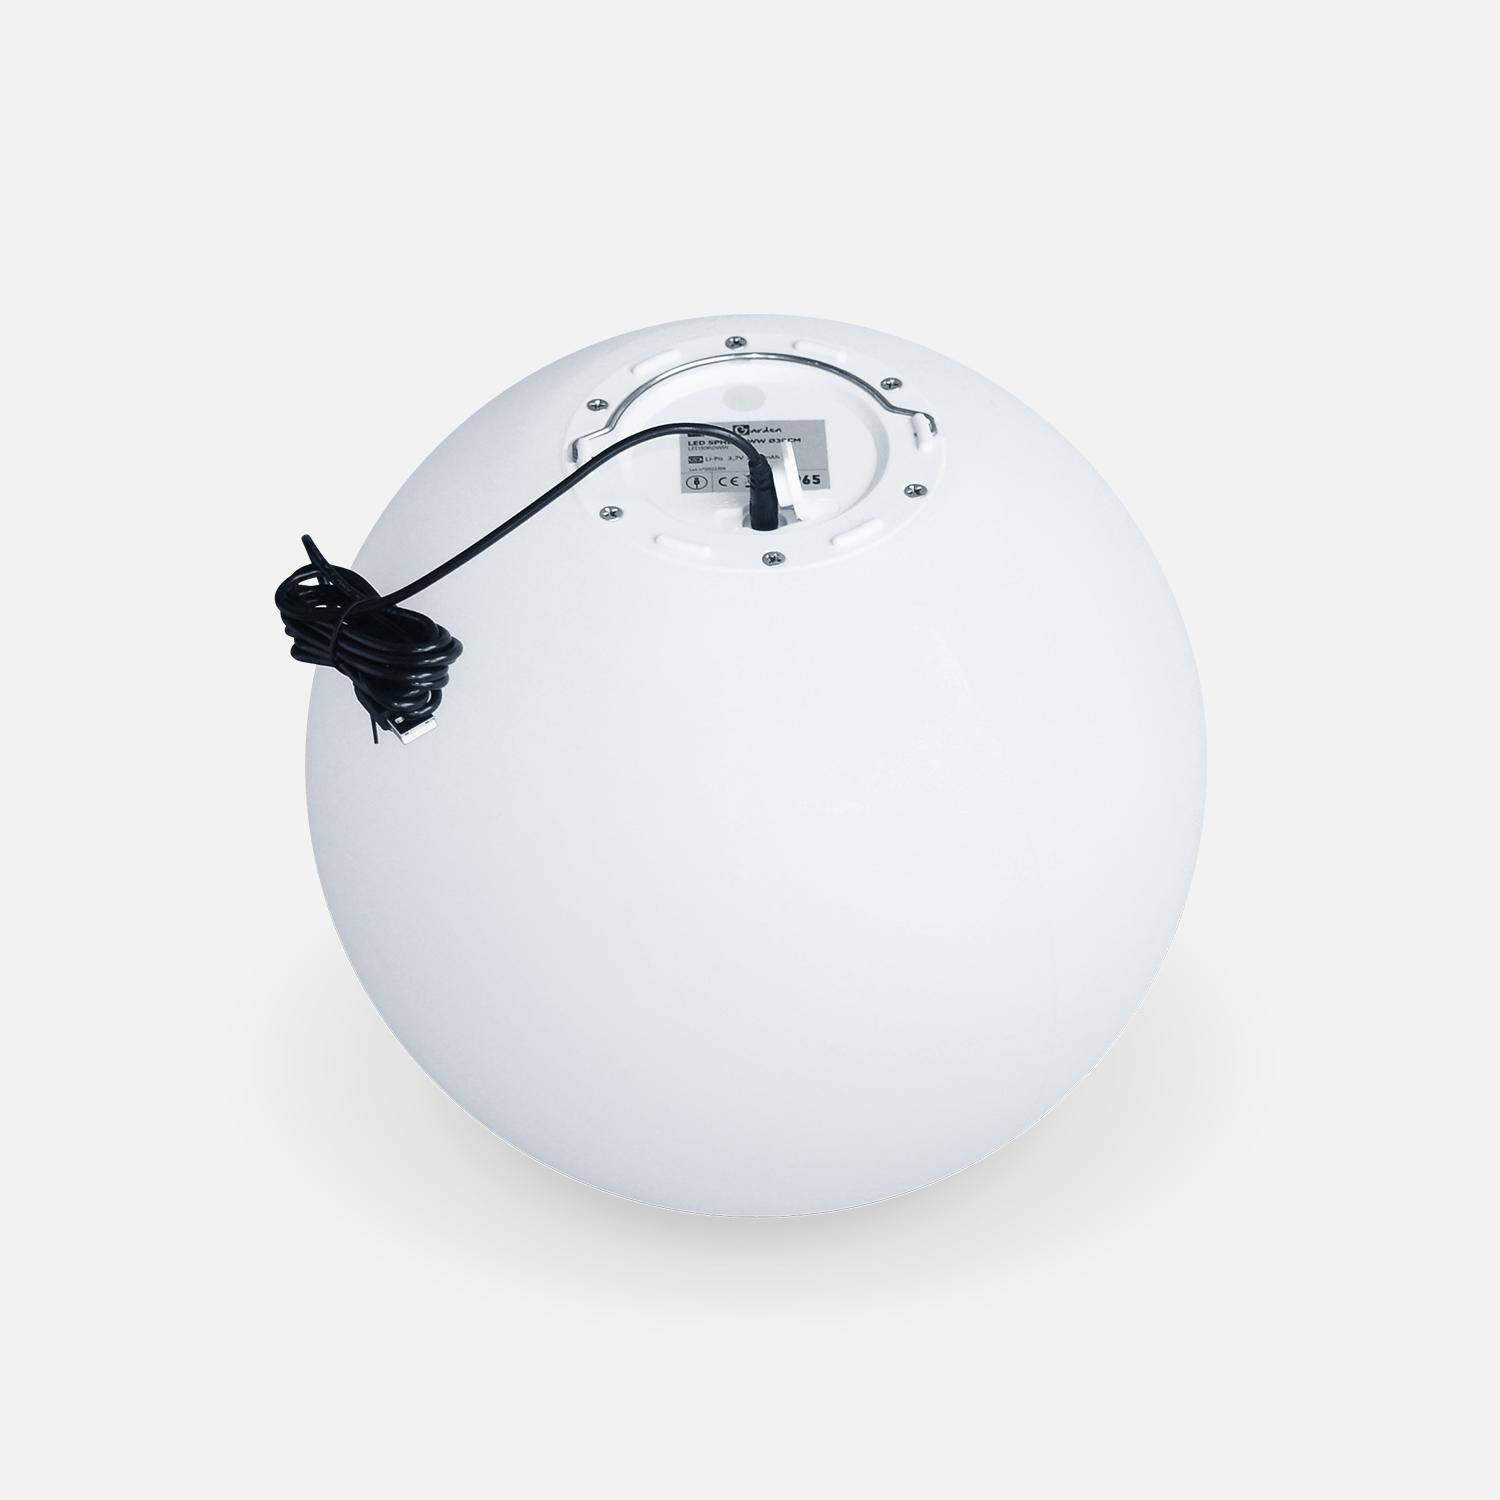 LED Bollamp 30cm – Decoratieve lichtbol, Ø30cm, warm wit, afstandsbediening Photo4